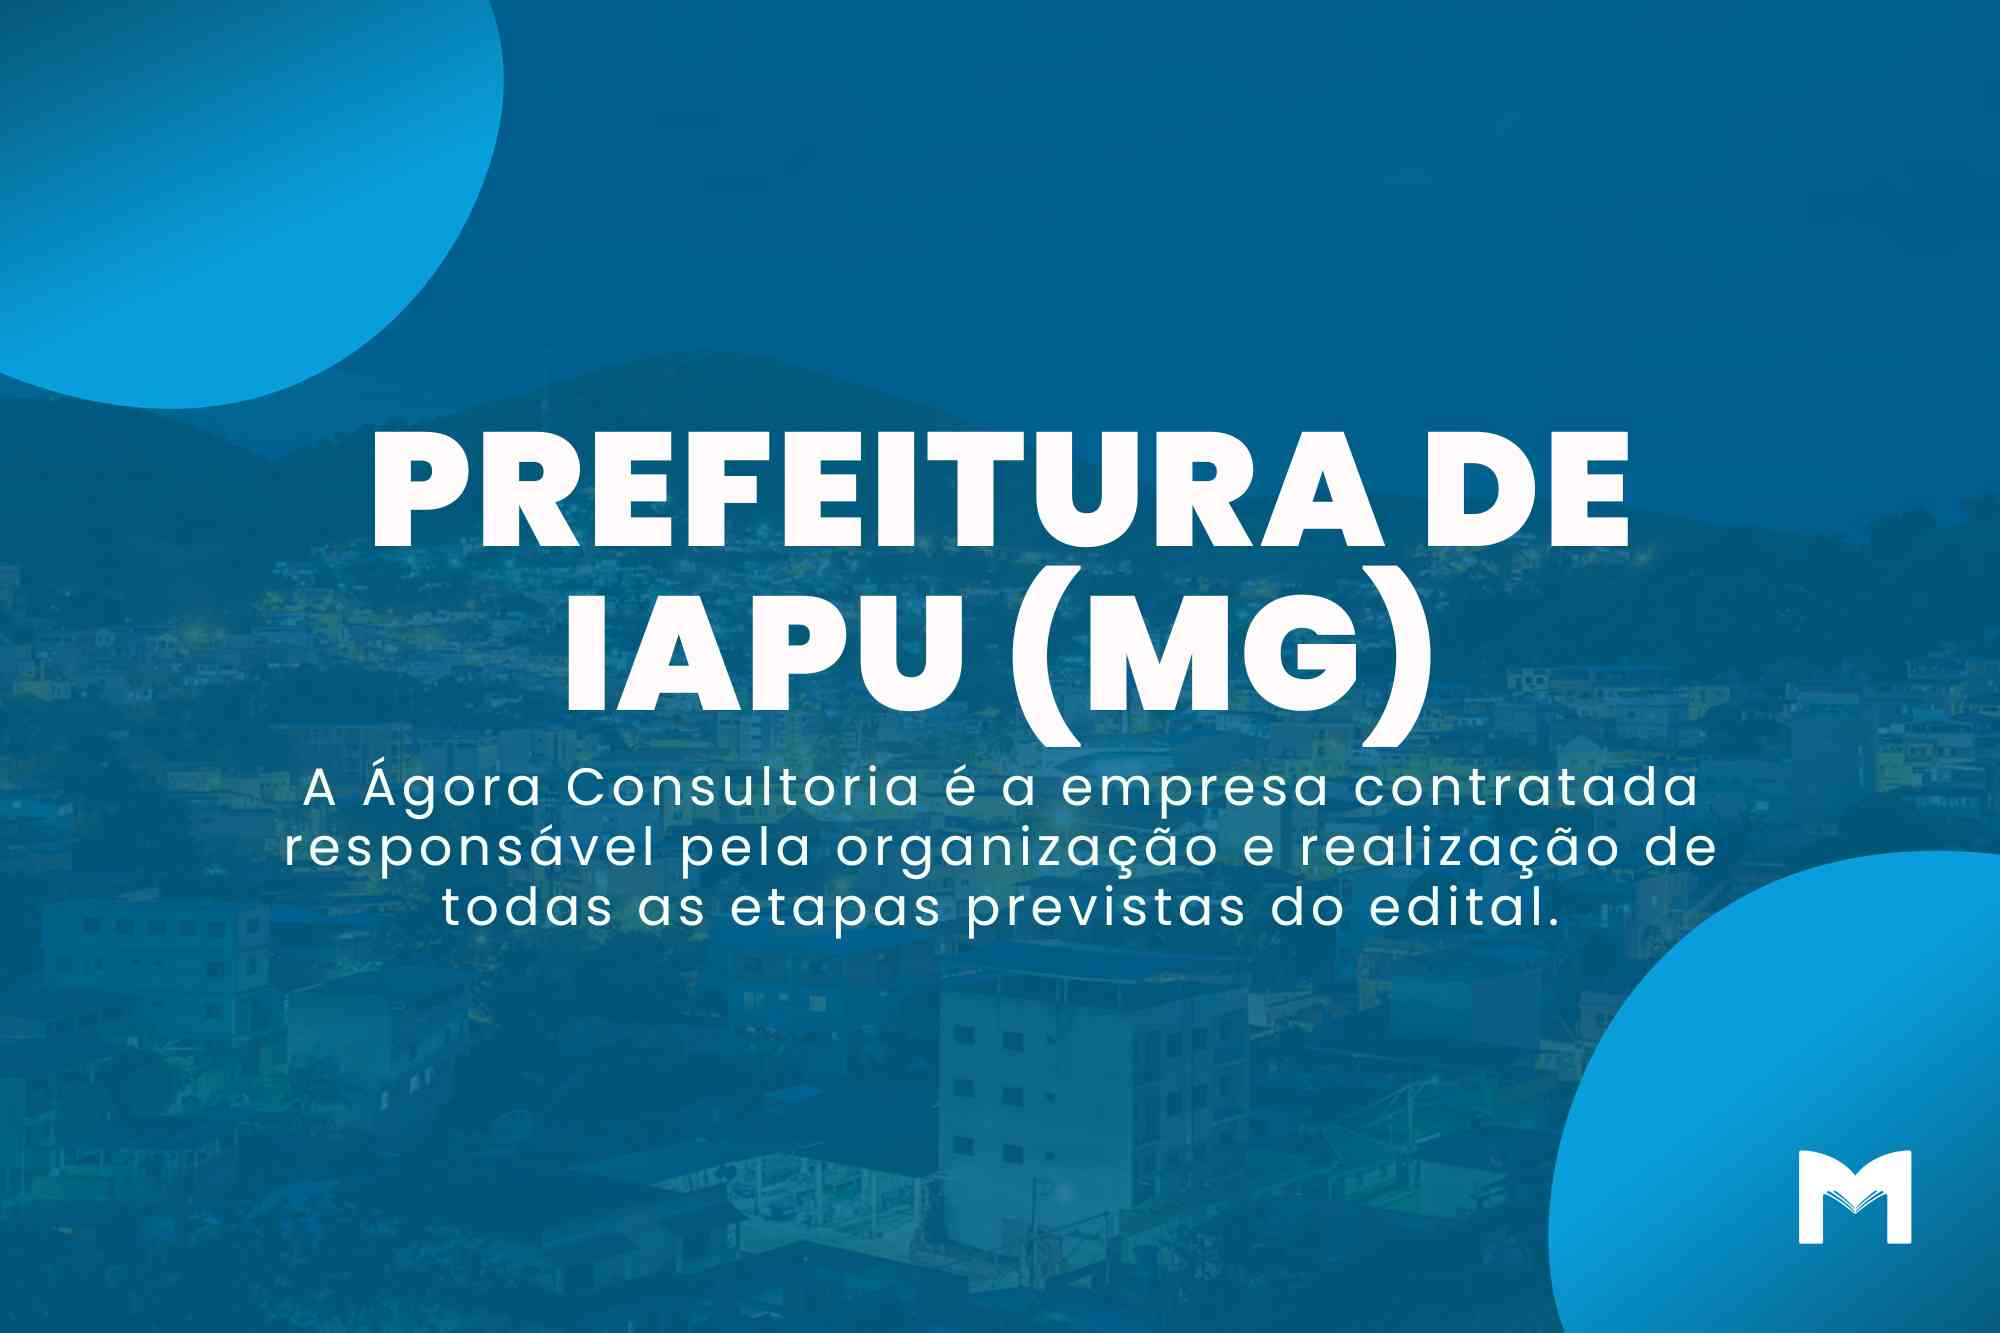 Prefeitura de Iapu MG: 109 vagas para Concurso e Seletivo!